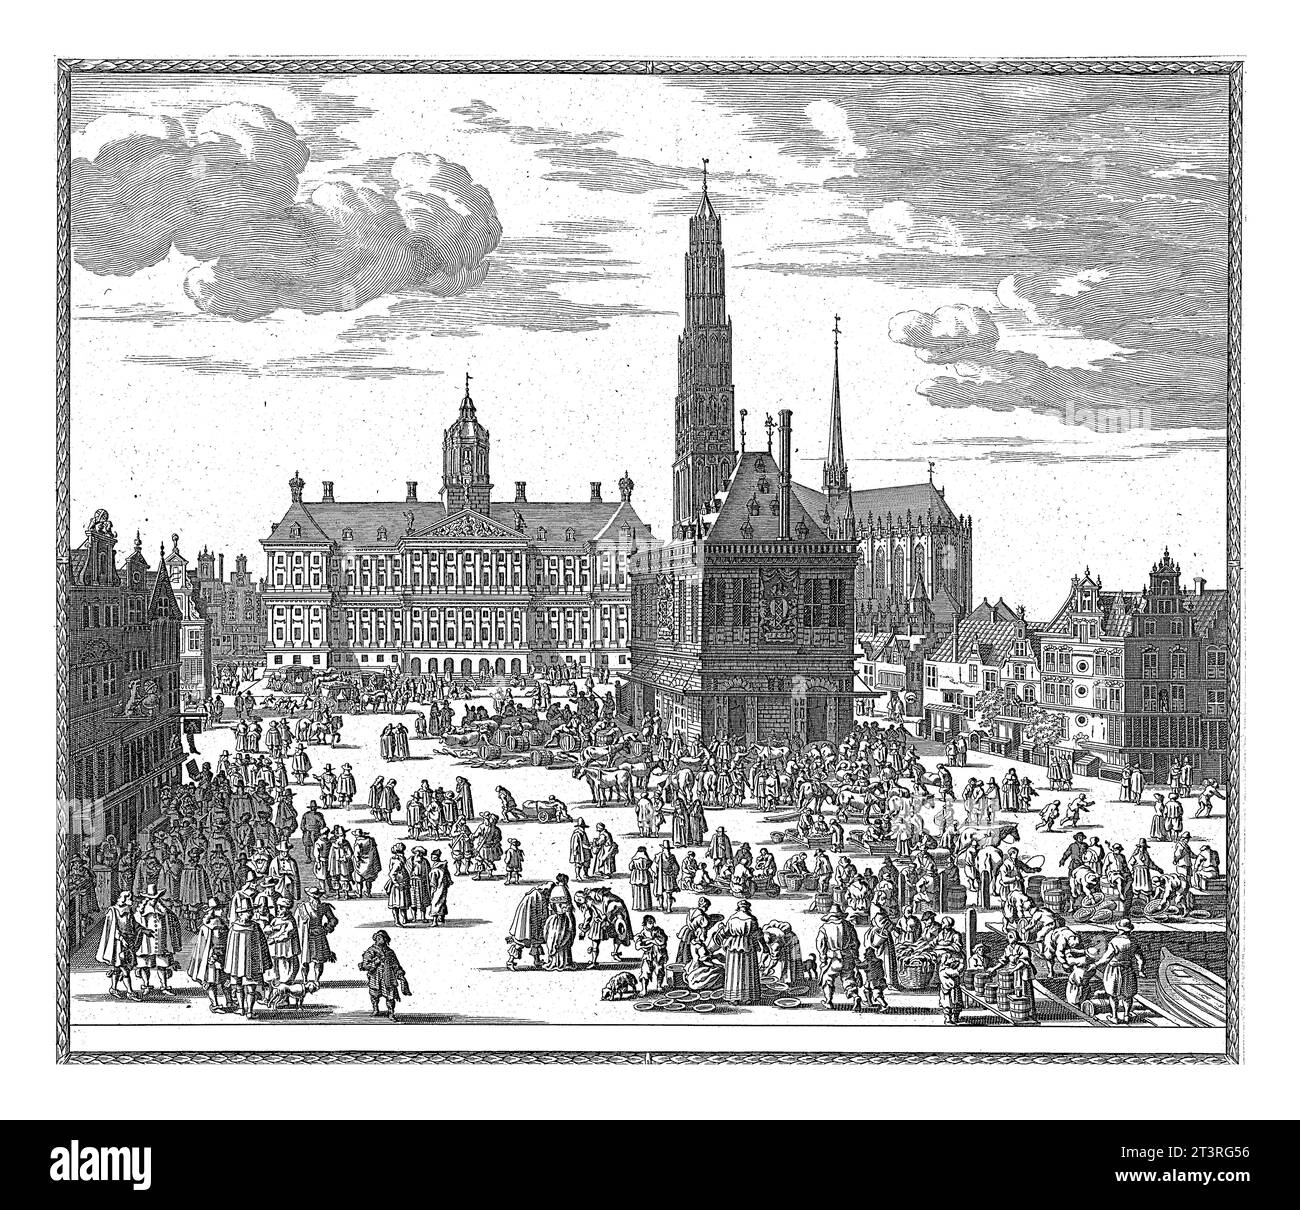 Blick auf das Rathaus, die Nieuwe Kerk und die Waag am Dam Platz in Amsterdam, Pieter Hendricksz. Schut, 1662 - 1720 Blick auf den Dam-Platz in Amsterdam. Stockfoto